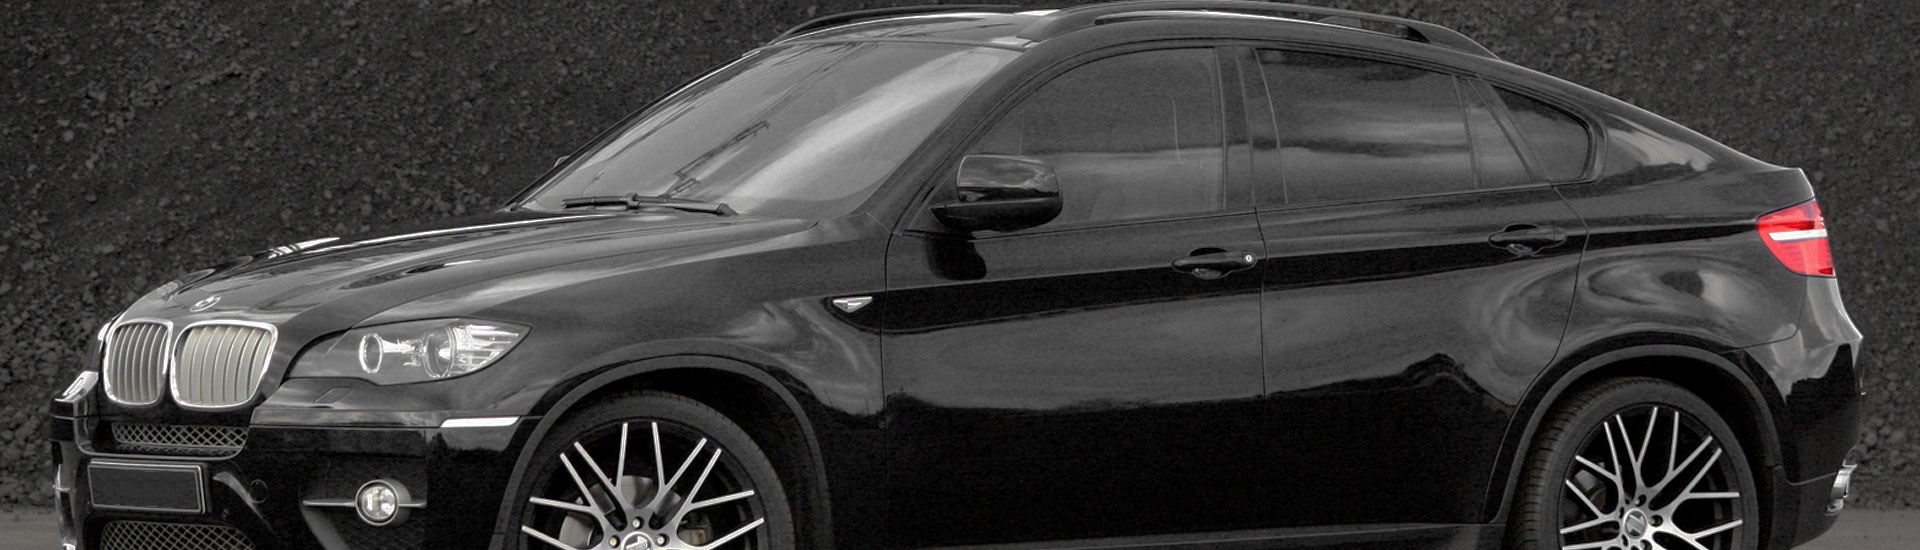 BMW X6 Window Tint